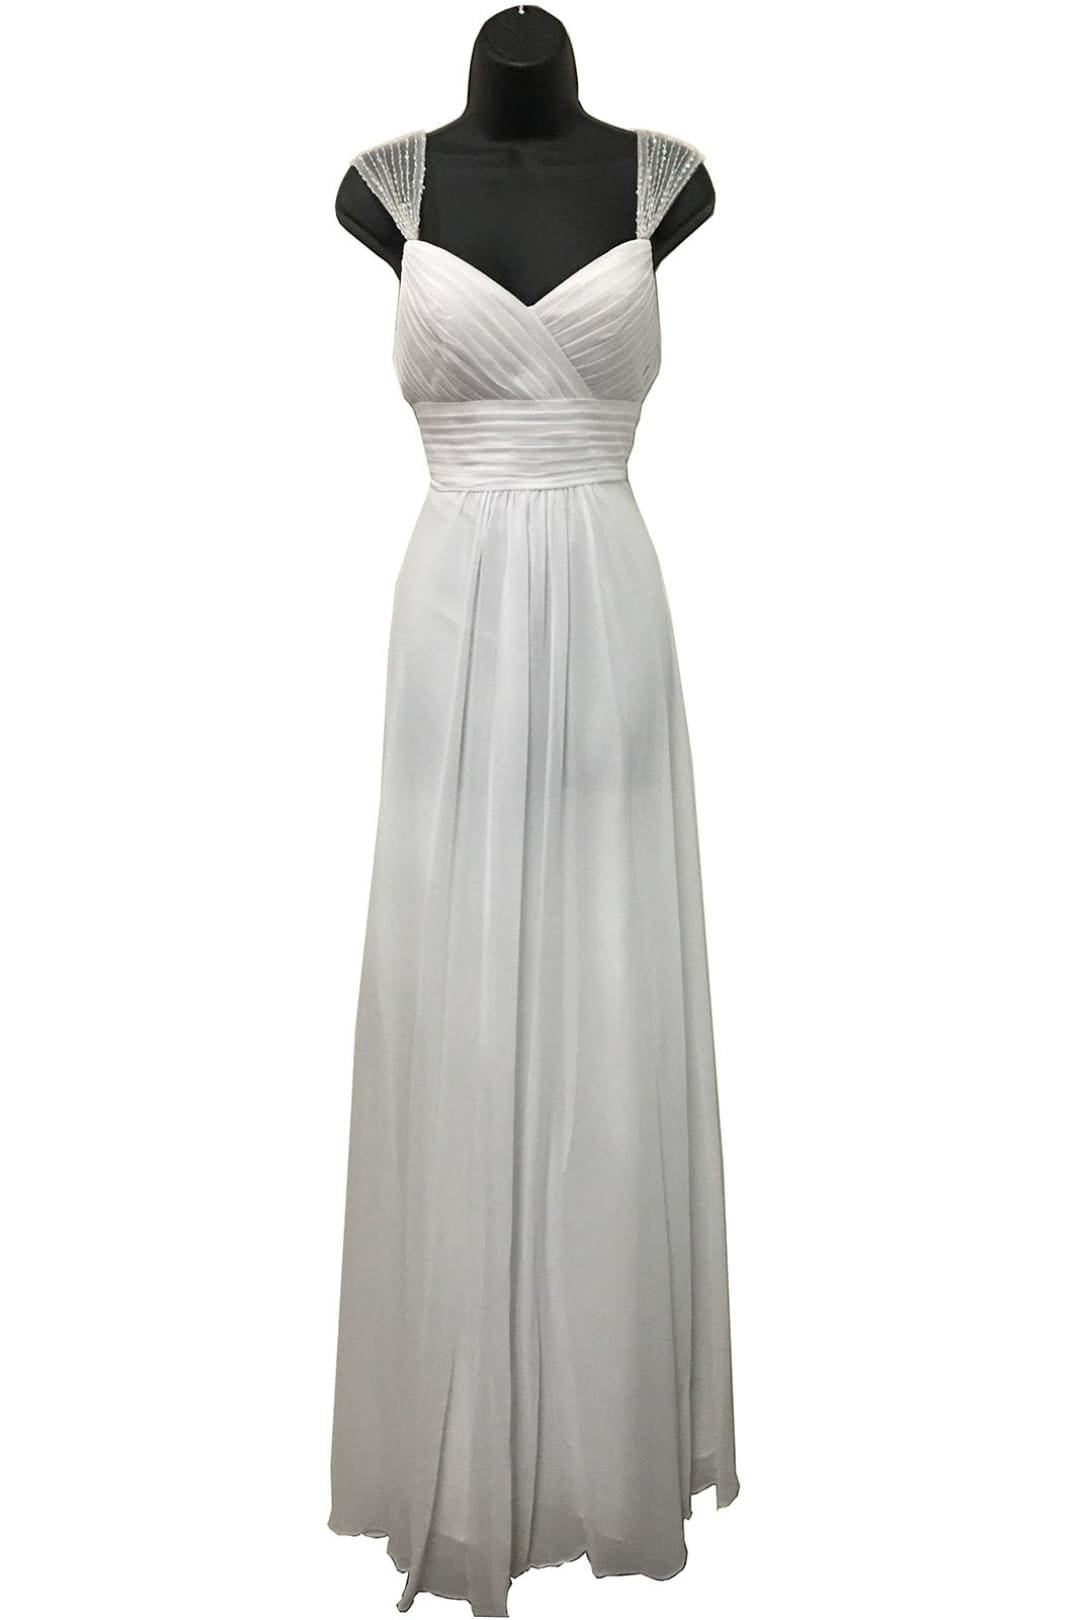 LA Merchandise LA1275B Simple Long Chiffon Wedding Dress - White - LA Merchandise